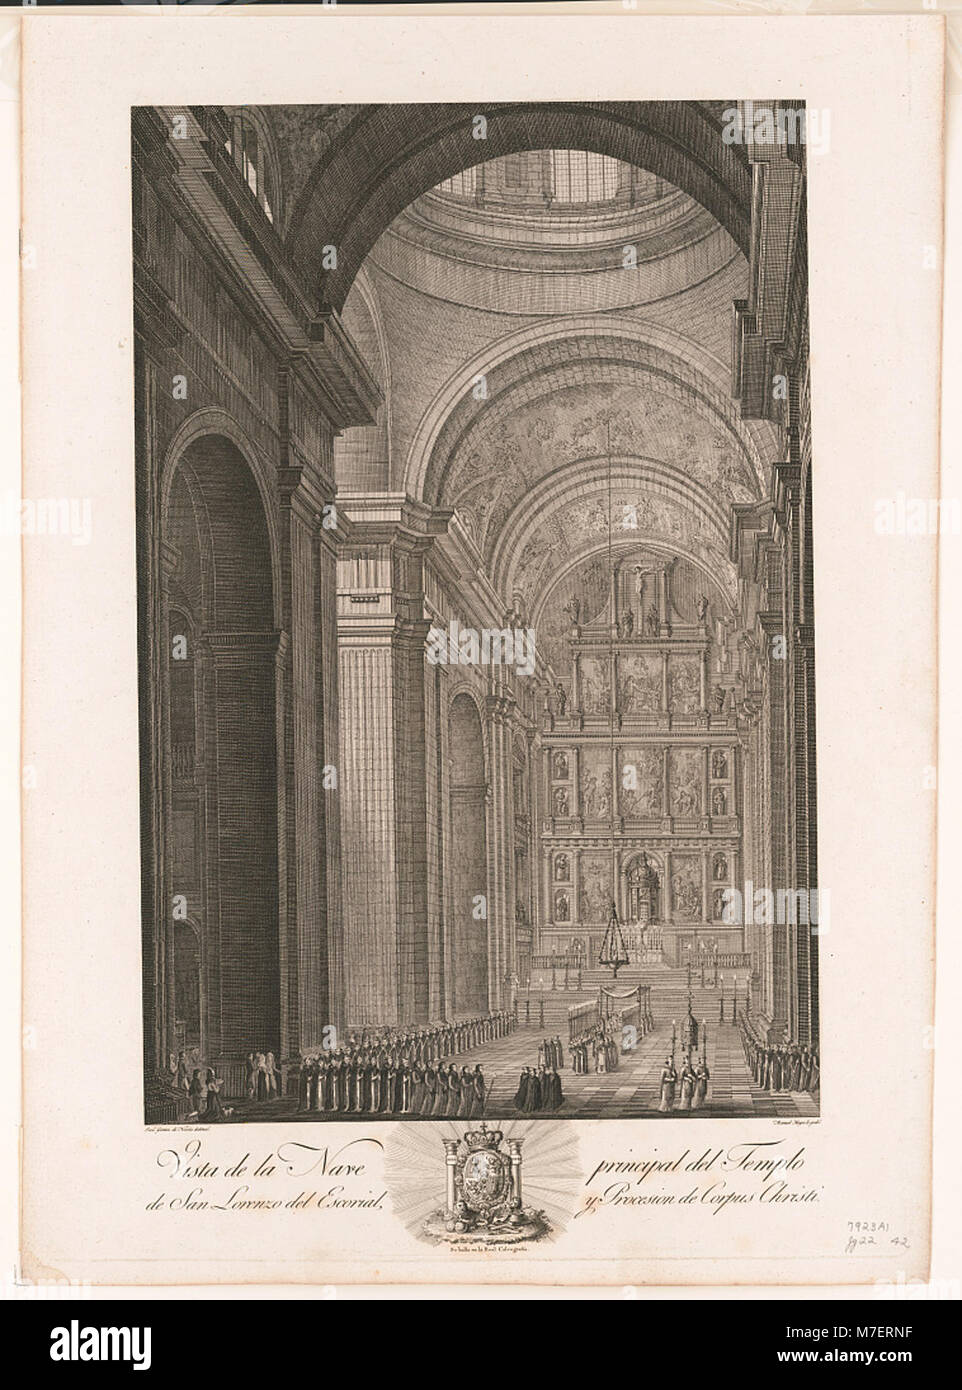 Vista de la nave Principal del Templo de San Lorenzo del Escorial, y procesion de Corpus Christi LCCN 2003673042 Stockfoto